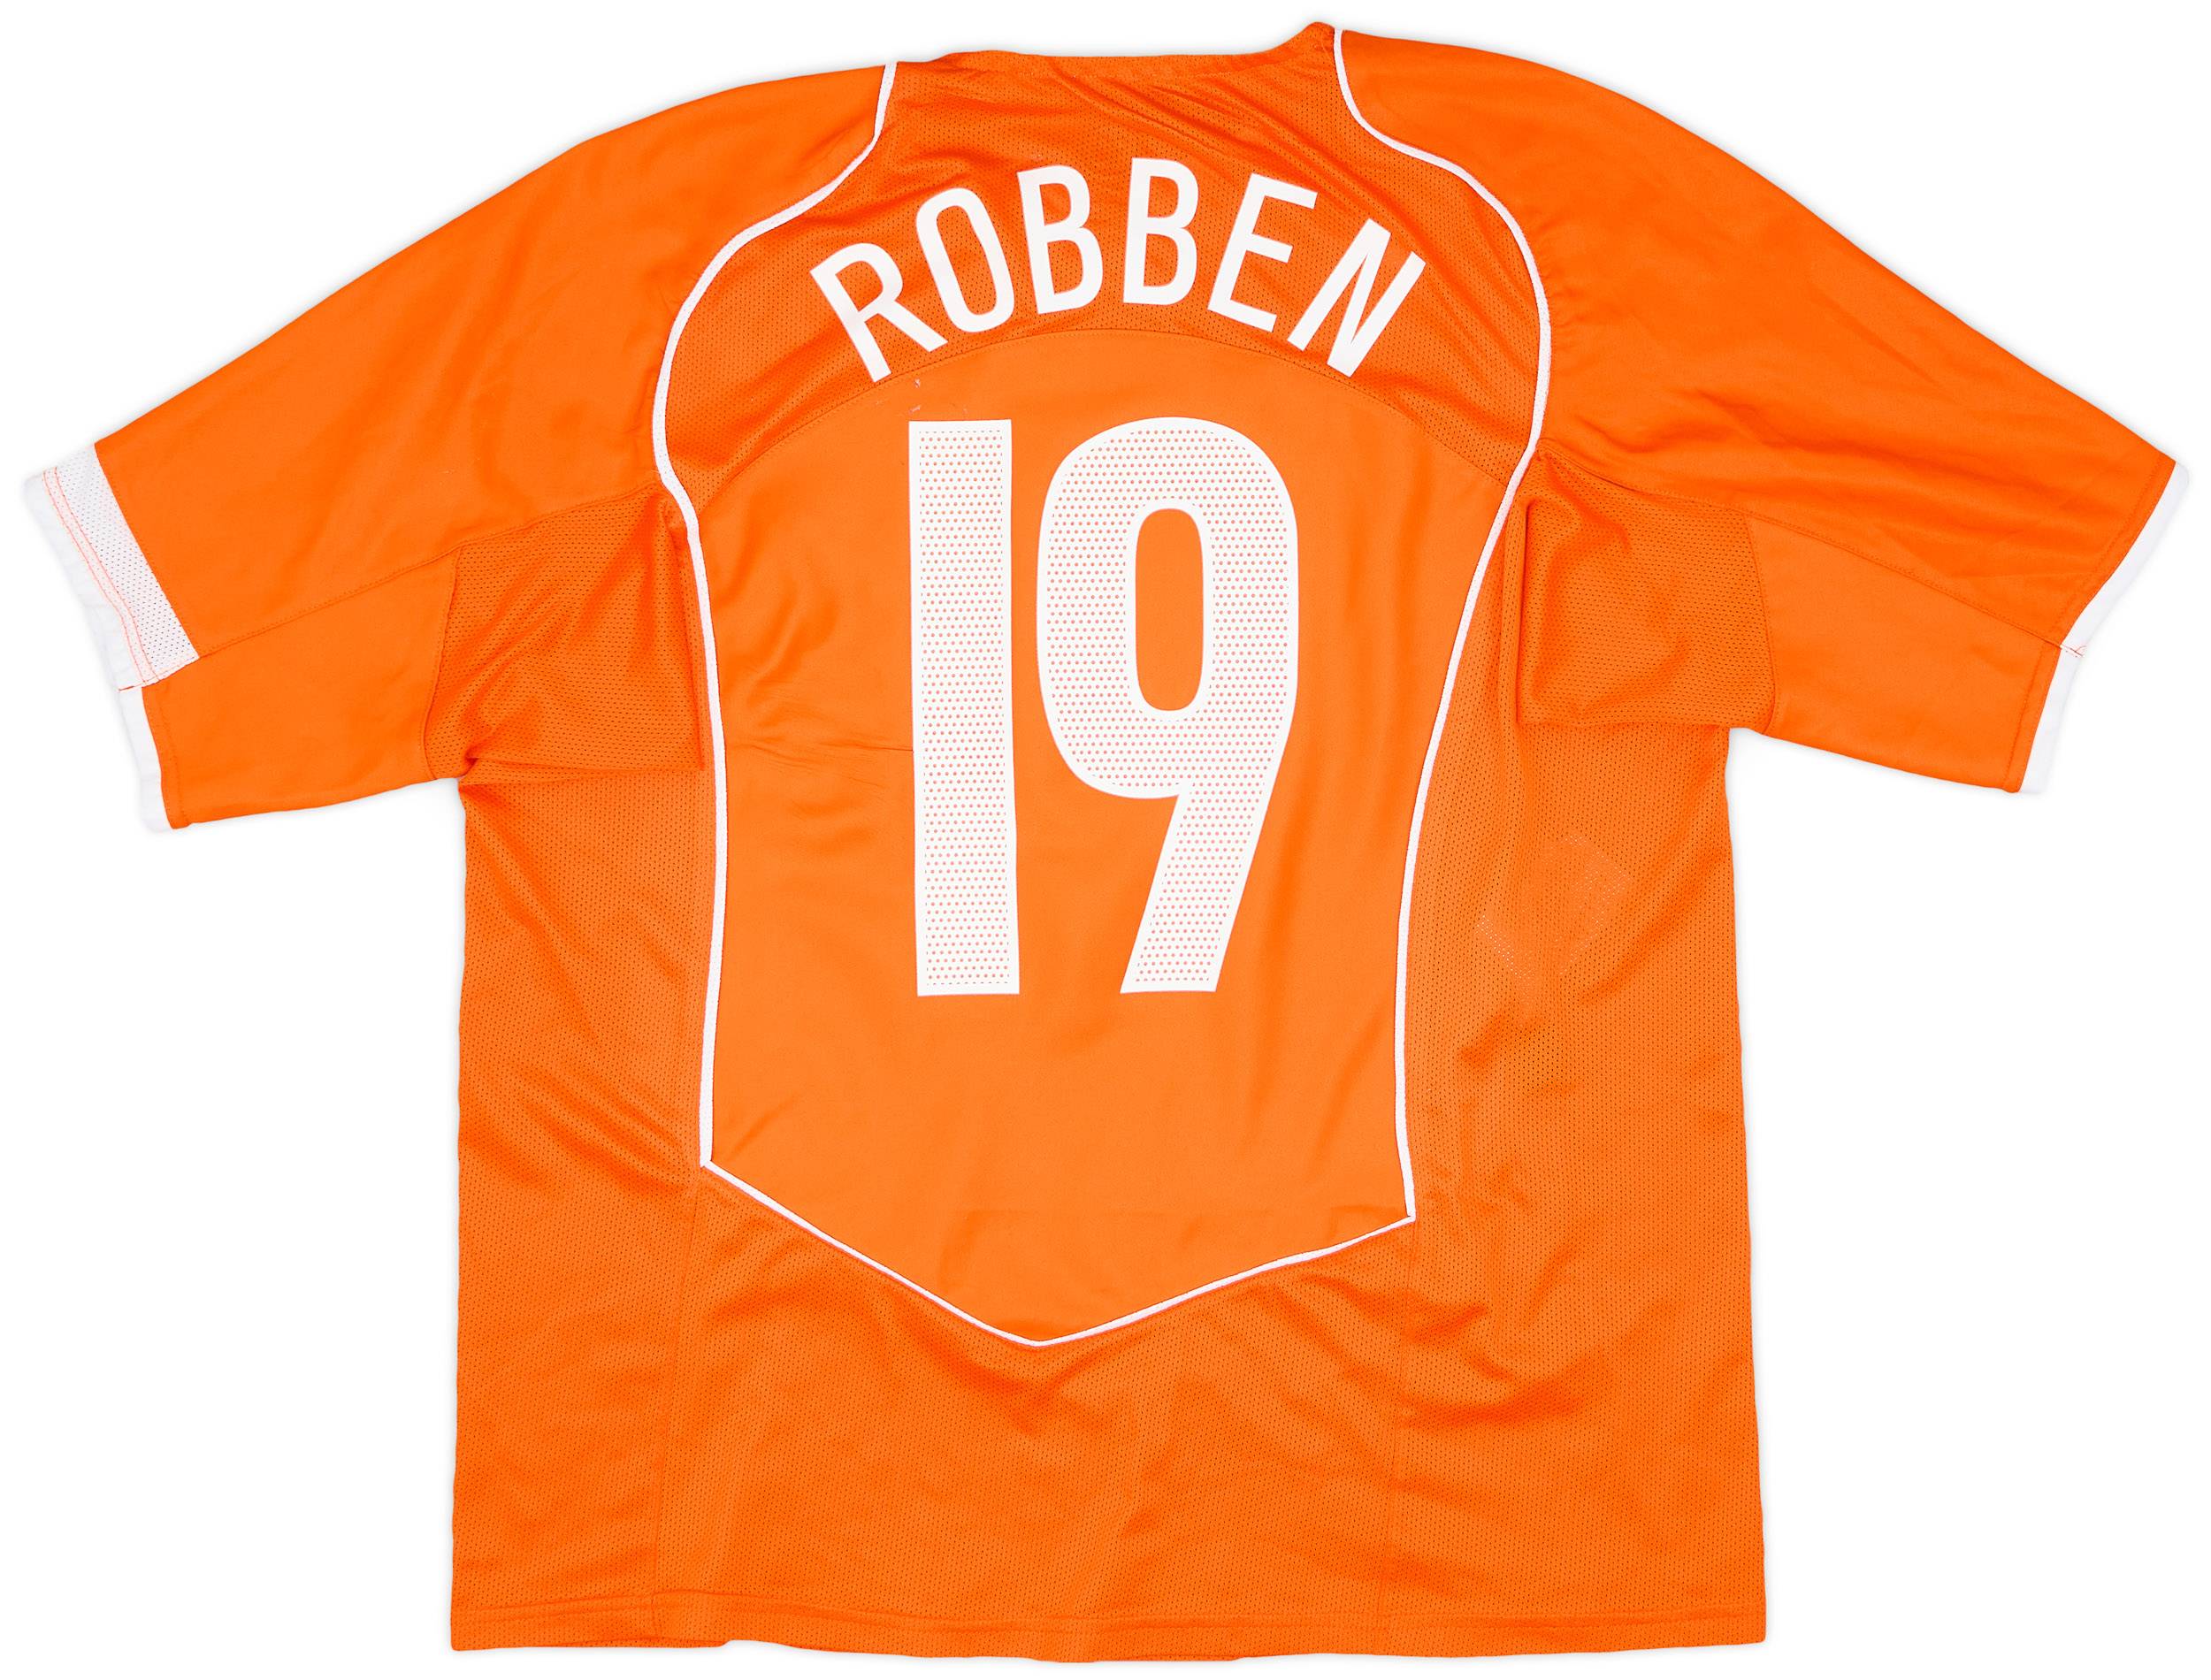 2004-06 Netherlands Home Shirt Robben #19 - 7/10 - (XL)